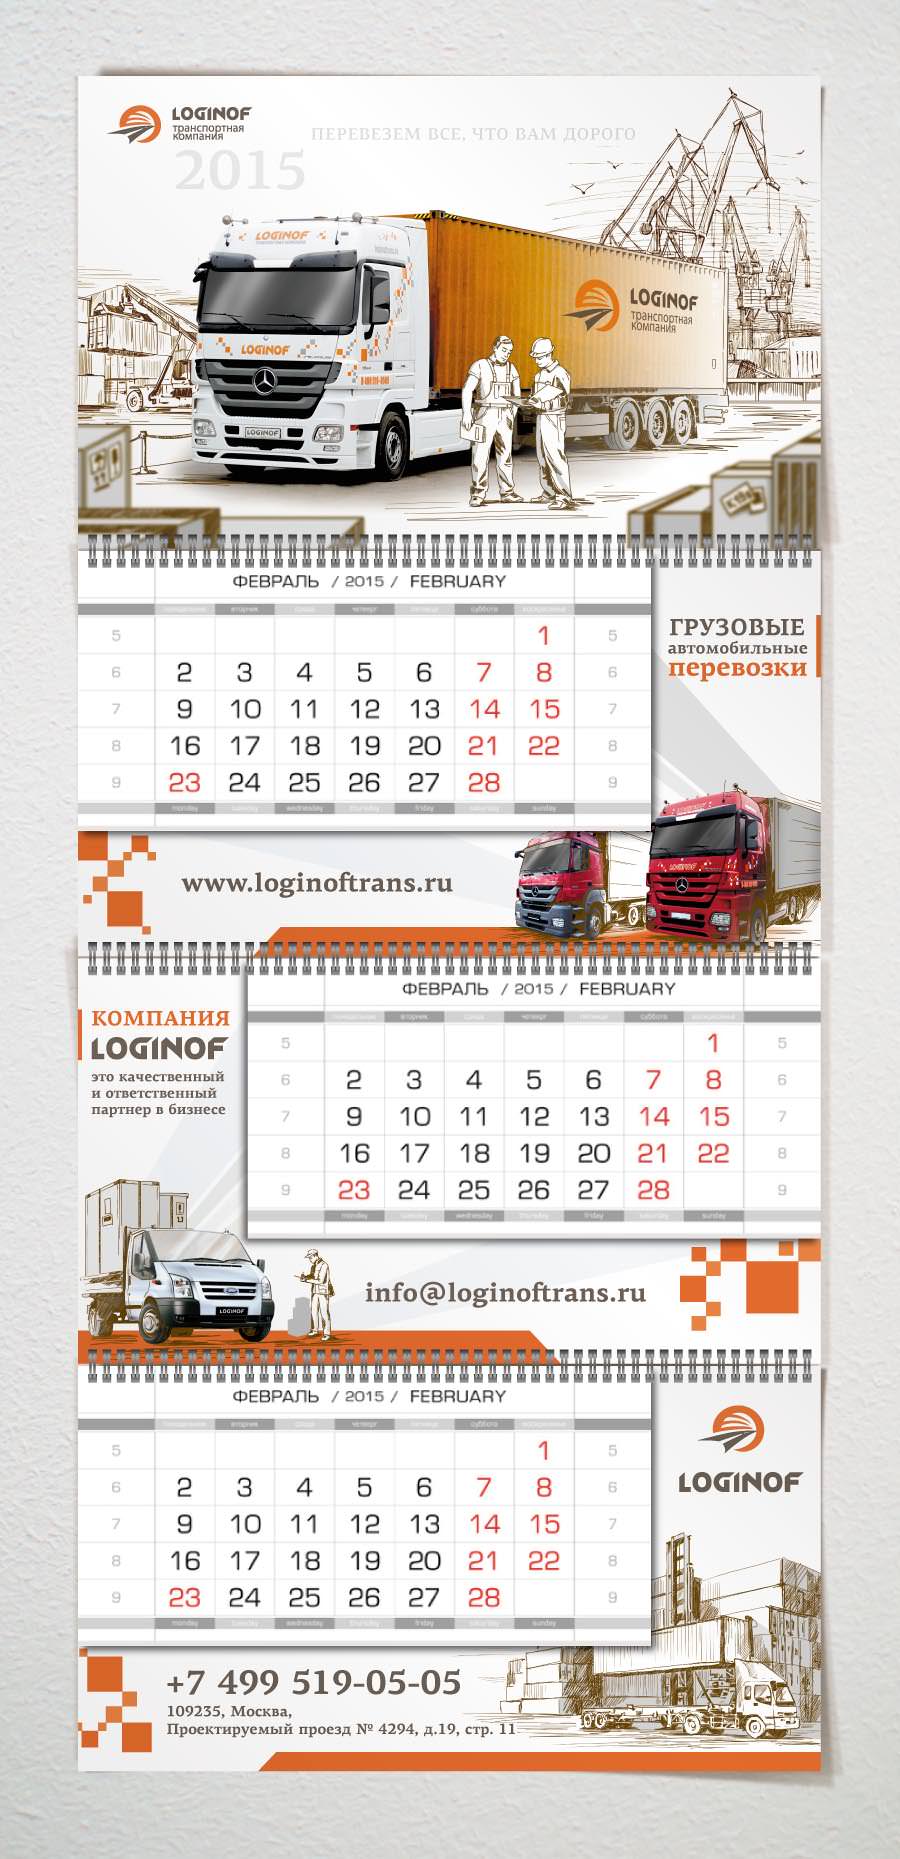 Календарь для транспортной компании «Loginof»